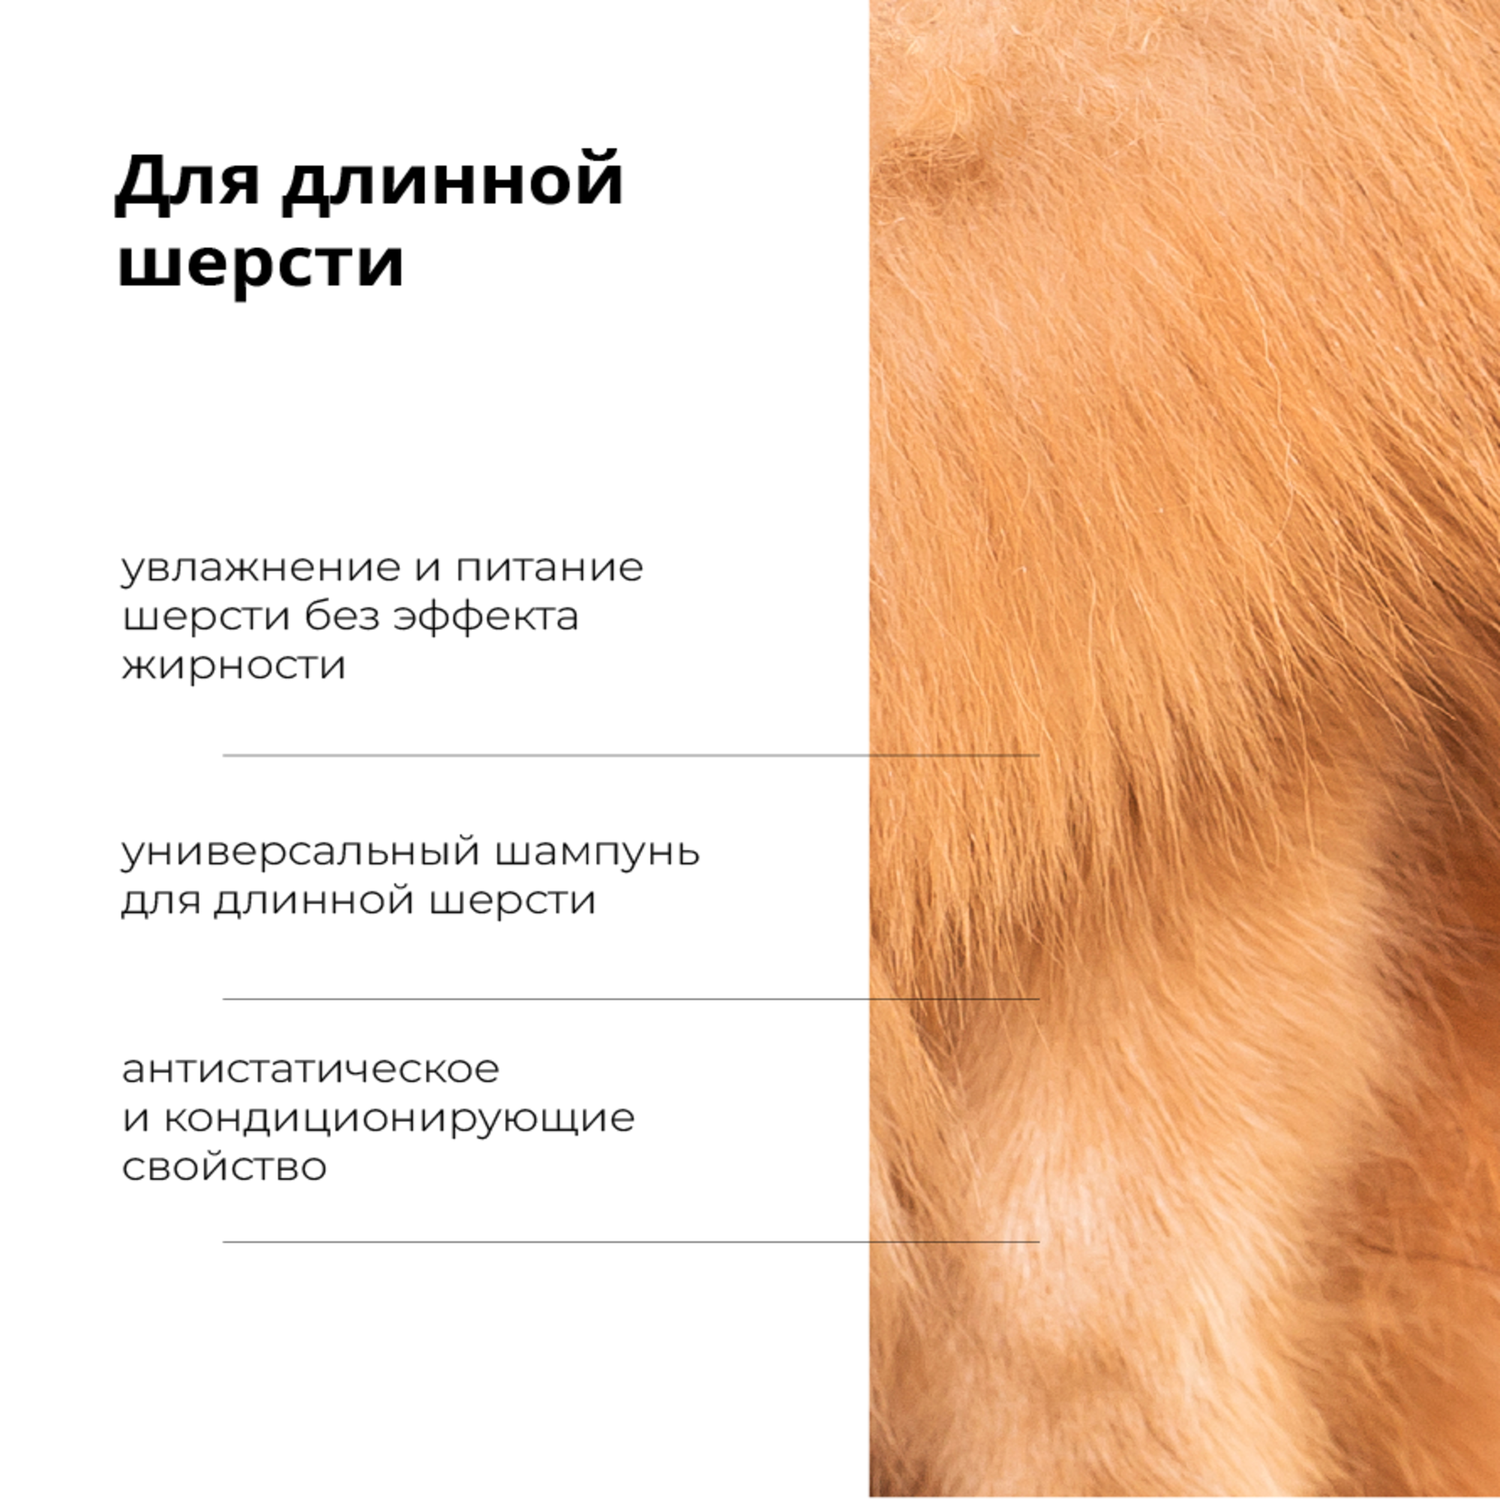 Шампунь Lanna ProAnimal для длинной шерсти профессиональный увлажняющий для собак - фото 3